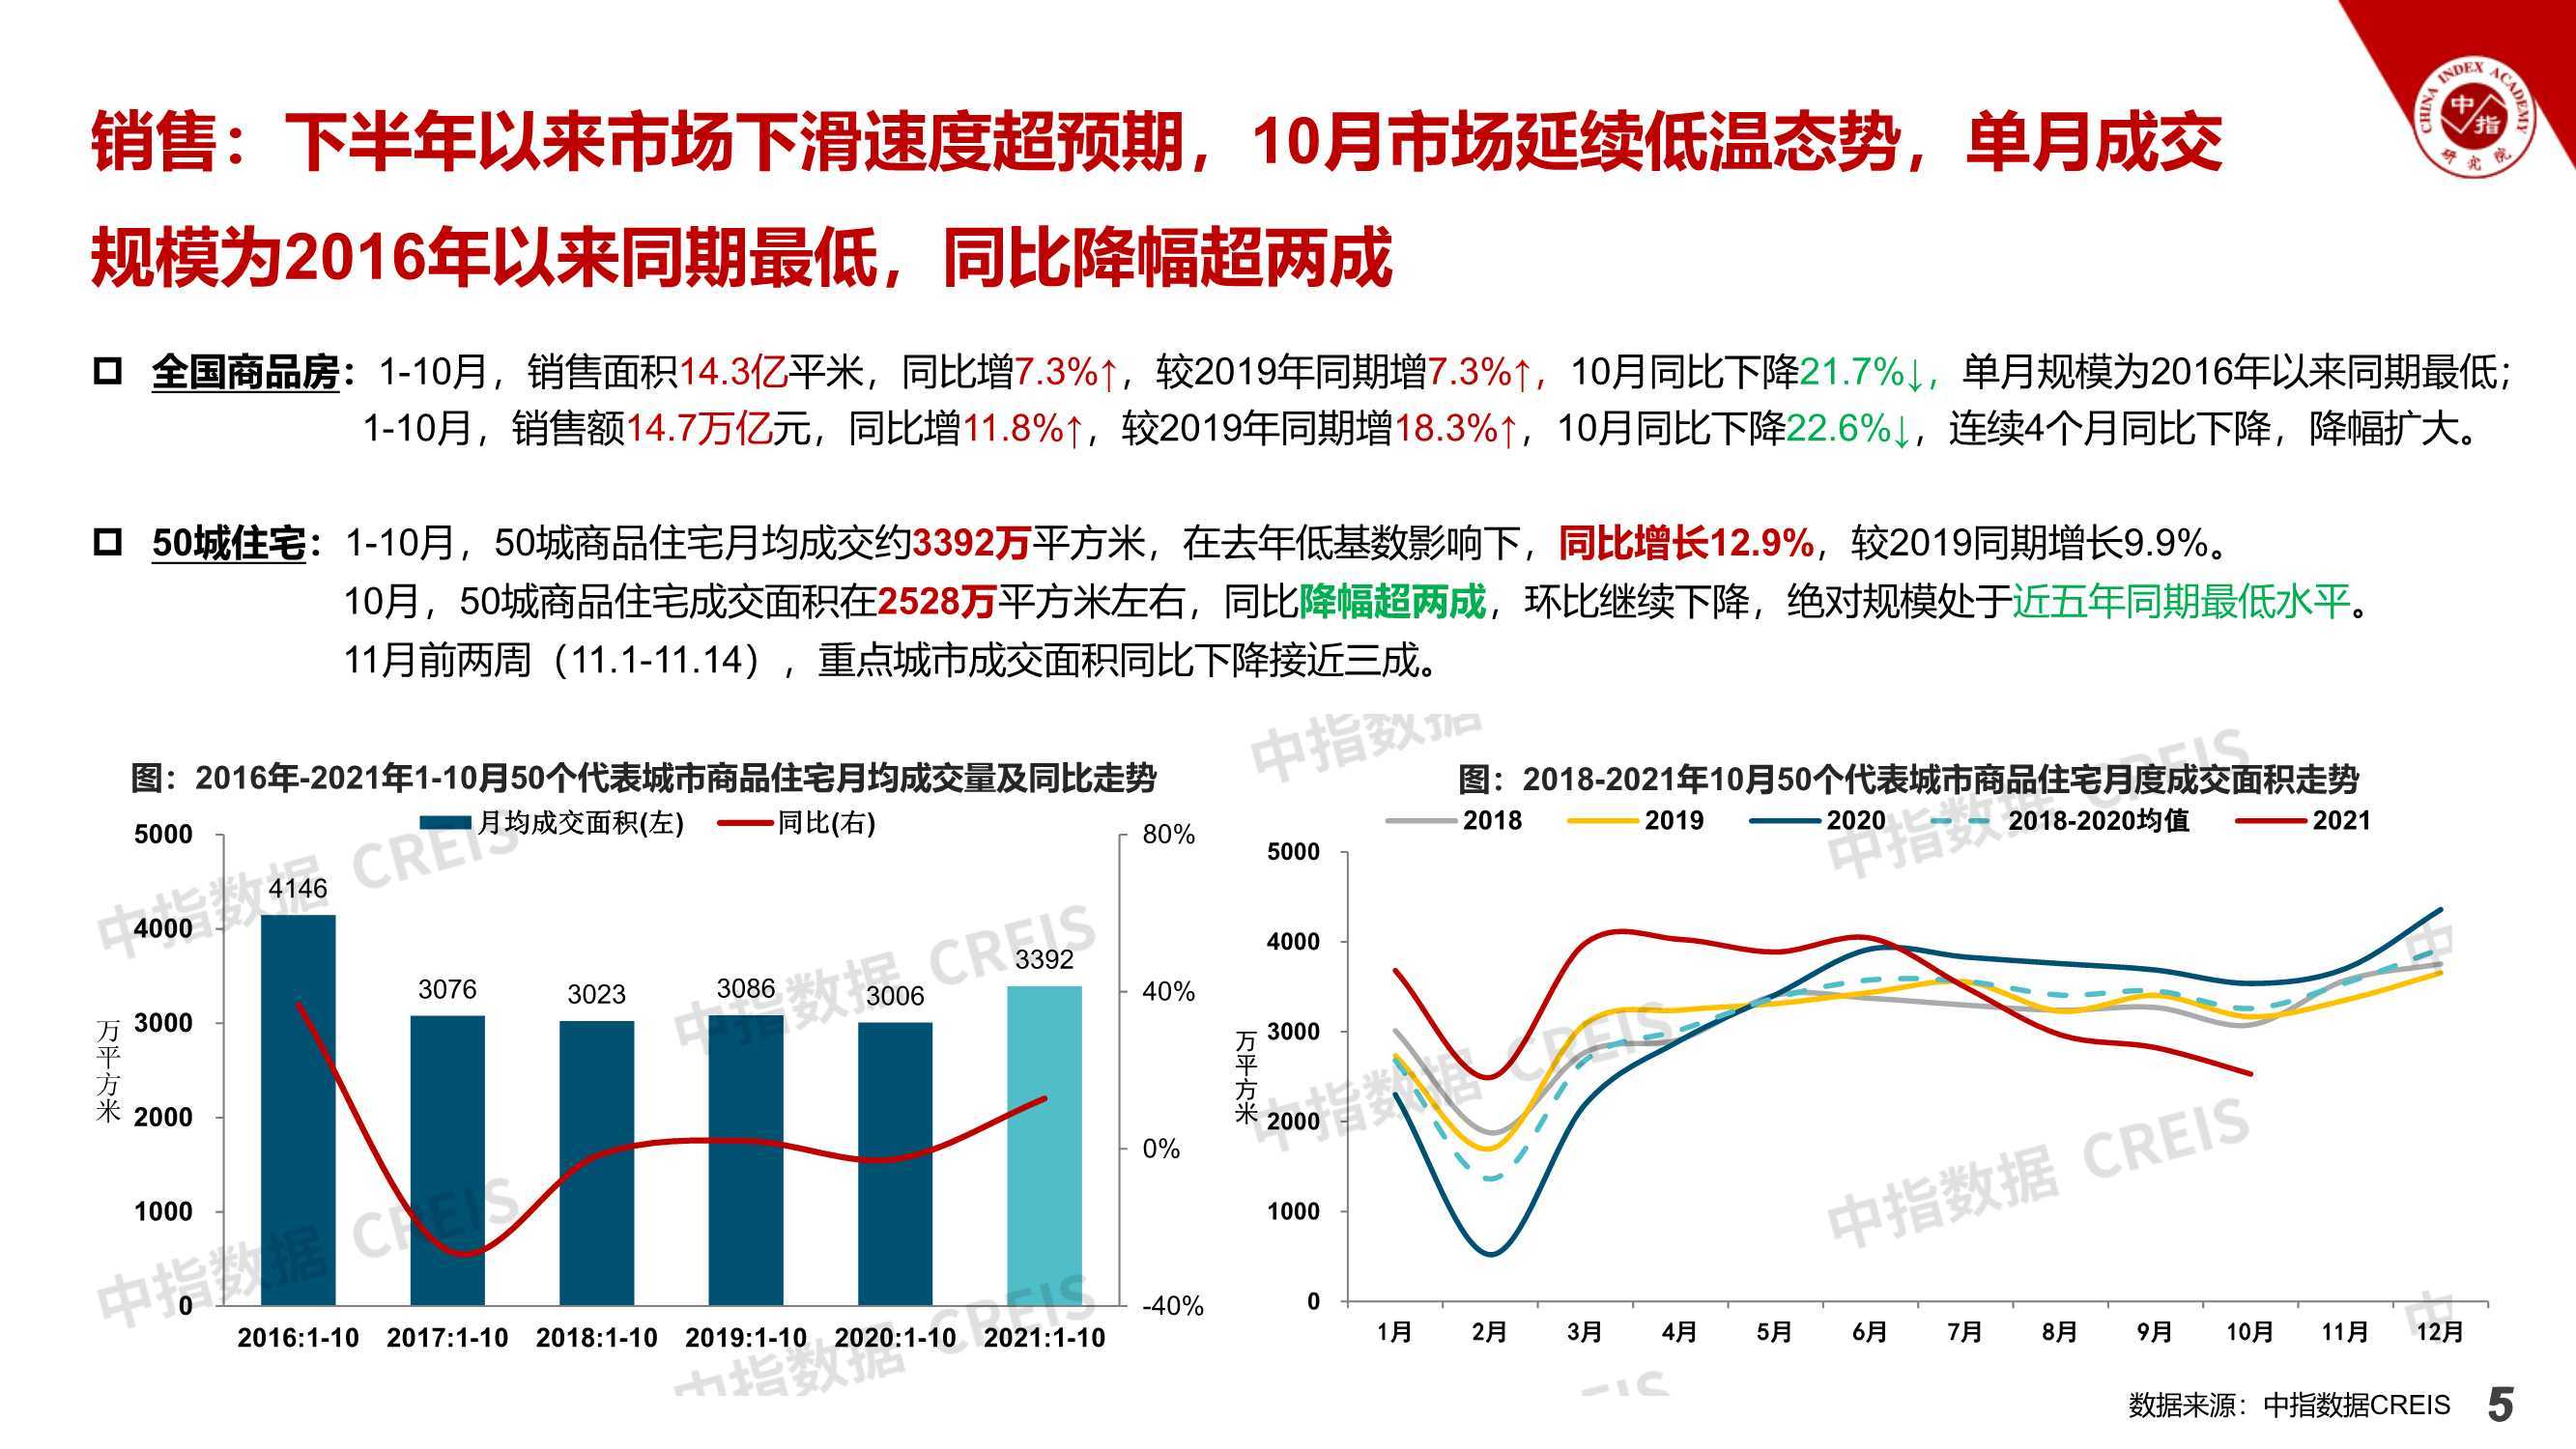 2021中国房地产市场形势总结及2022趋势展望